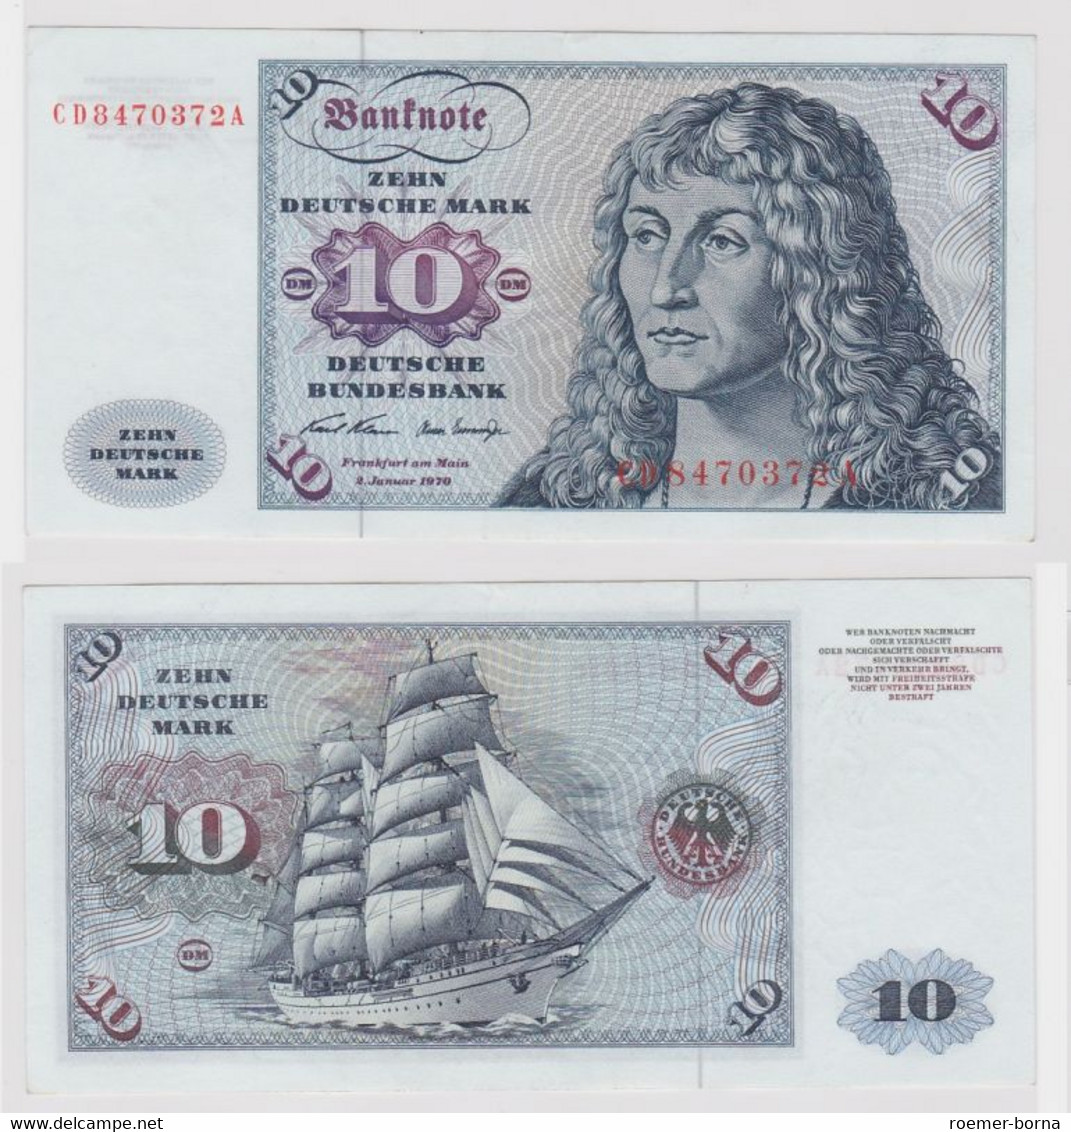 T147581 Banknote 10 DM Deutsche Mark Ro. 270a Schein 2.Jan. 1970 KN CD 8470372 A - 10 DM